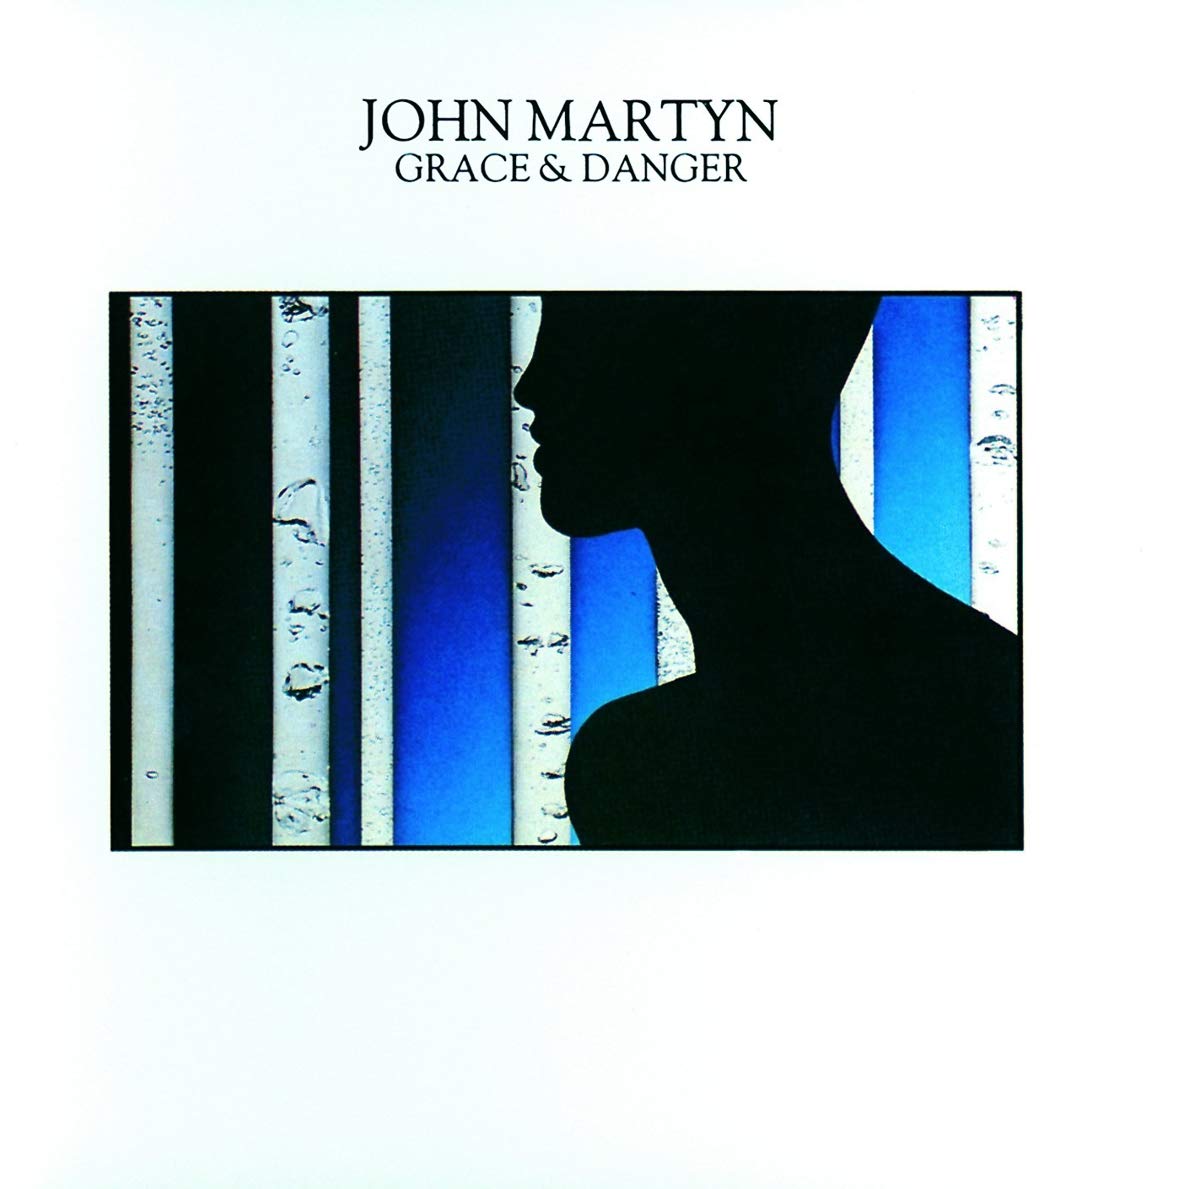 John Martyn - Grace & Danger - 2CD